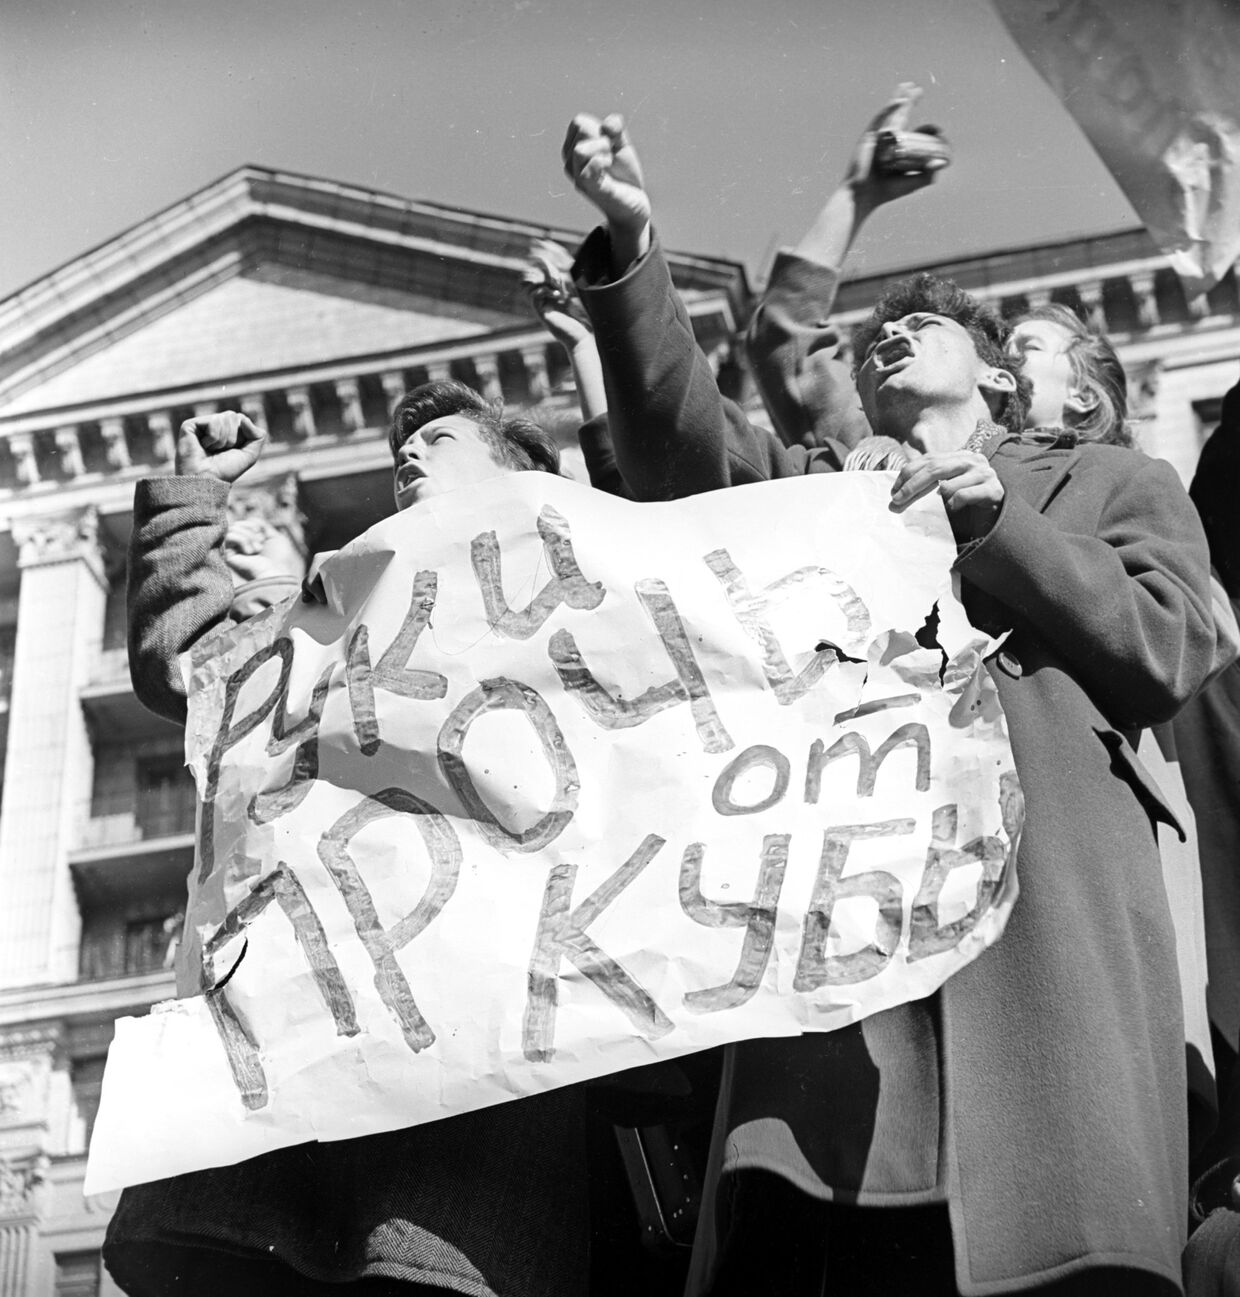 Пикет под лозунгом Руки прочь от Кубы! в Москве во время Карибского кризиса 1962 года